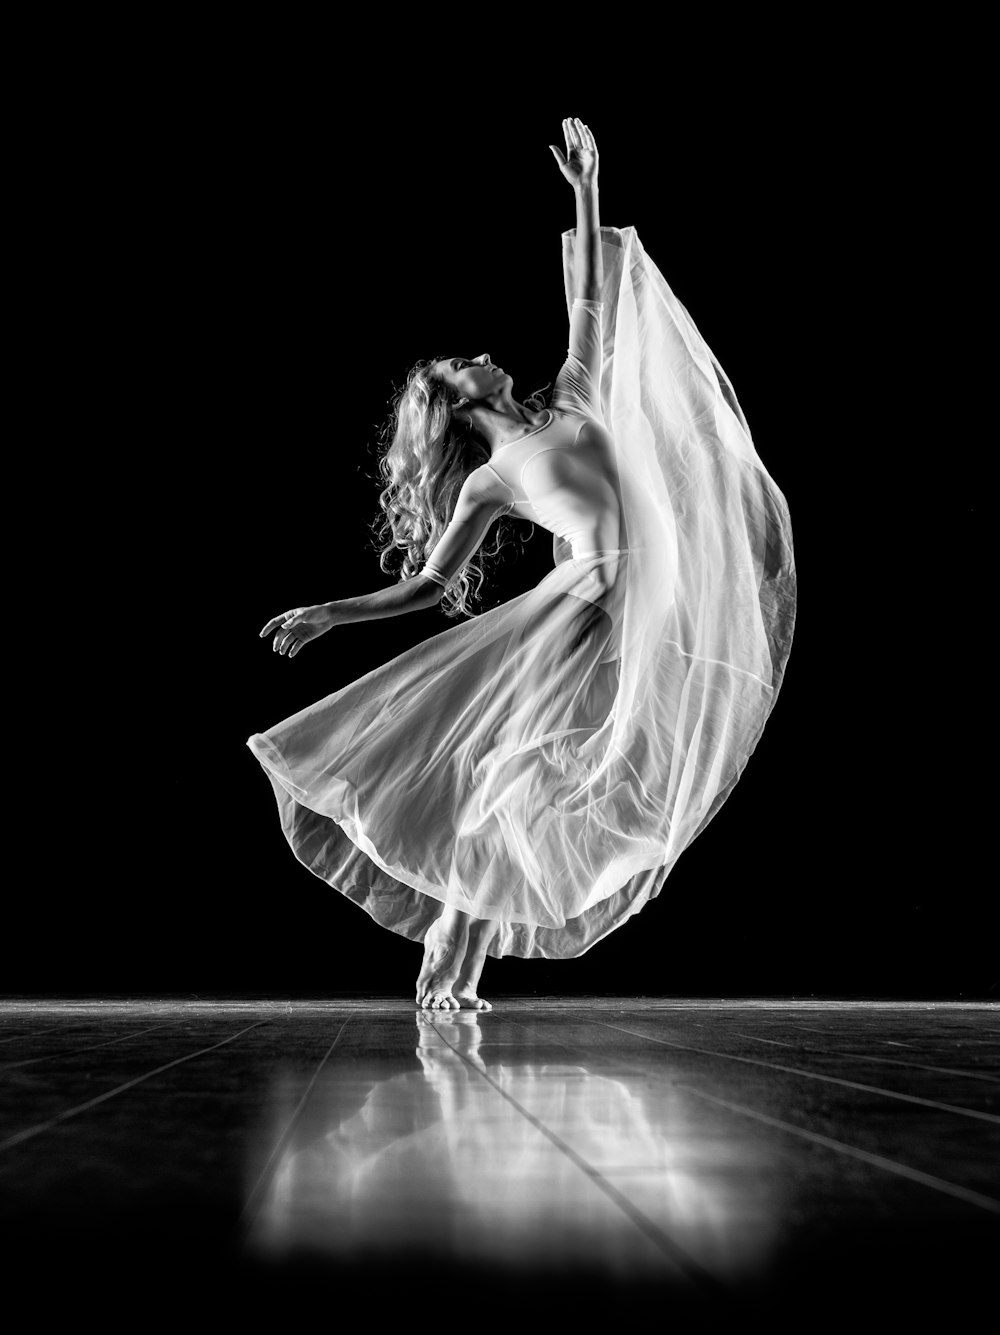 fotografia em tons de cinza da mulher fazendo balé